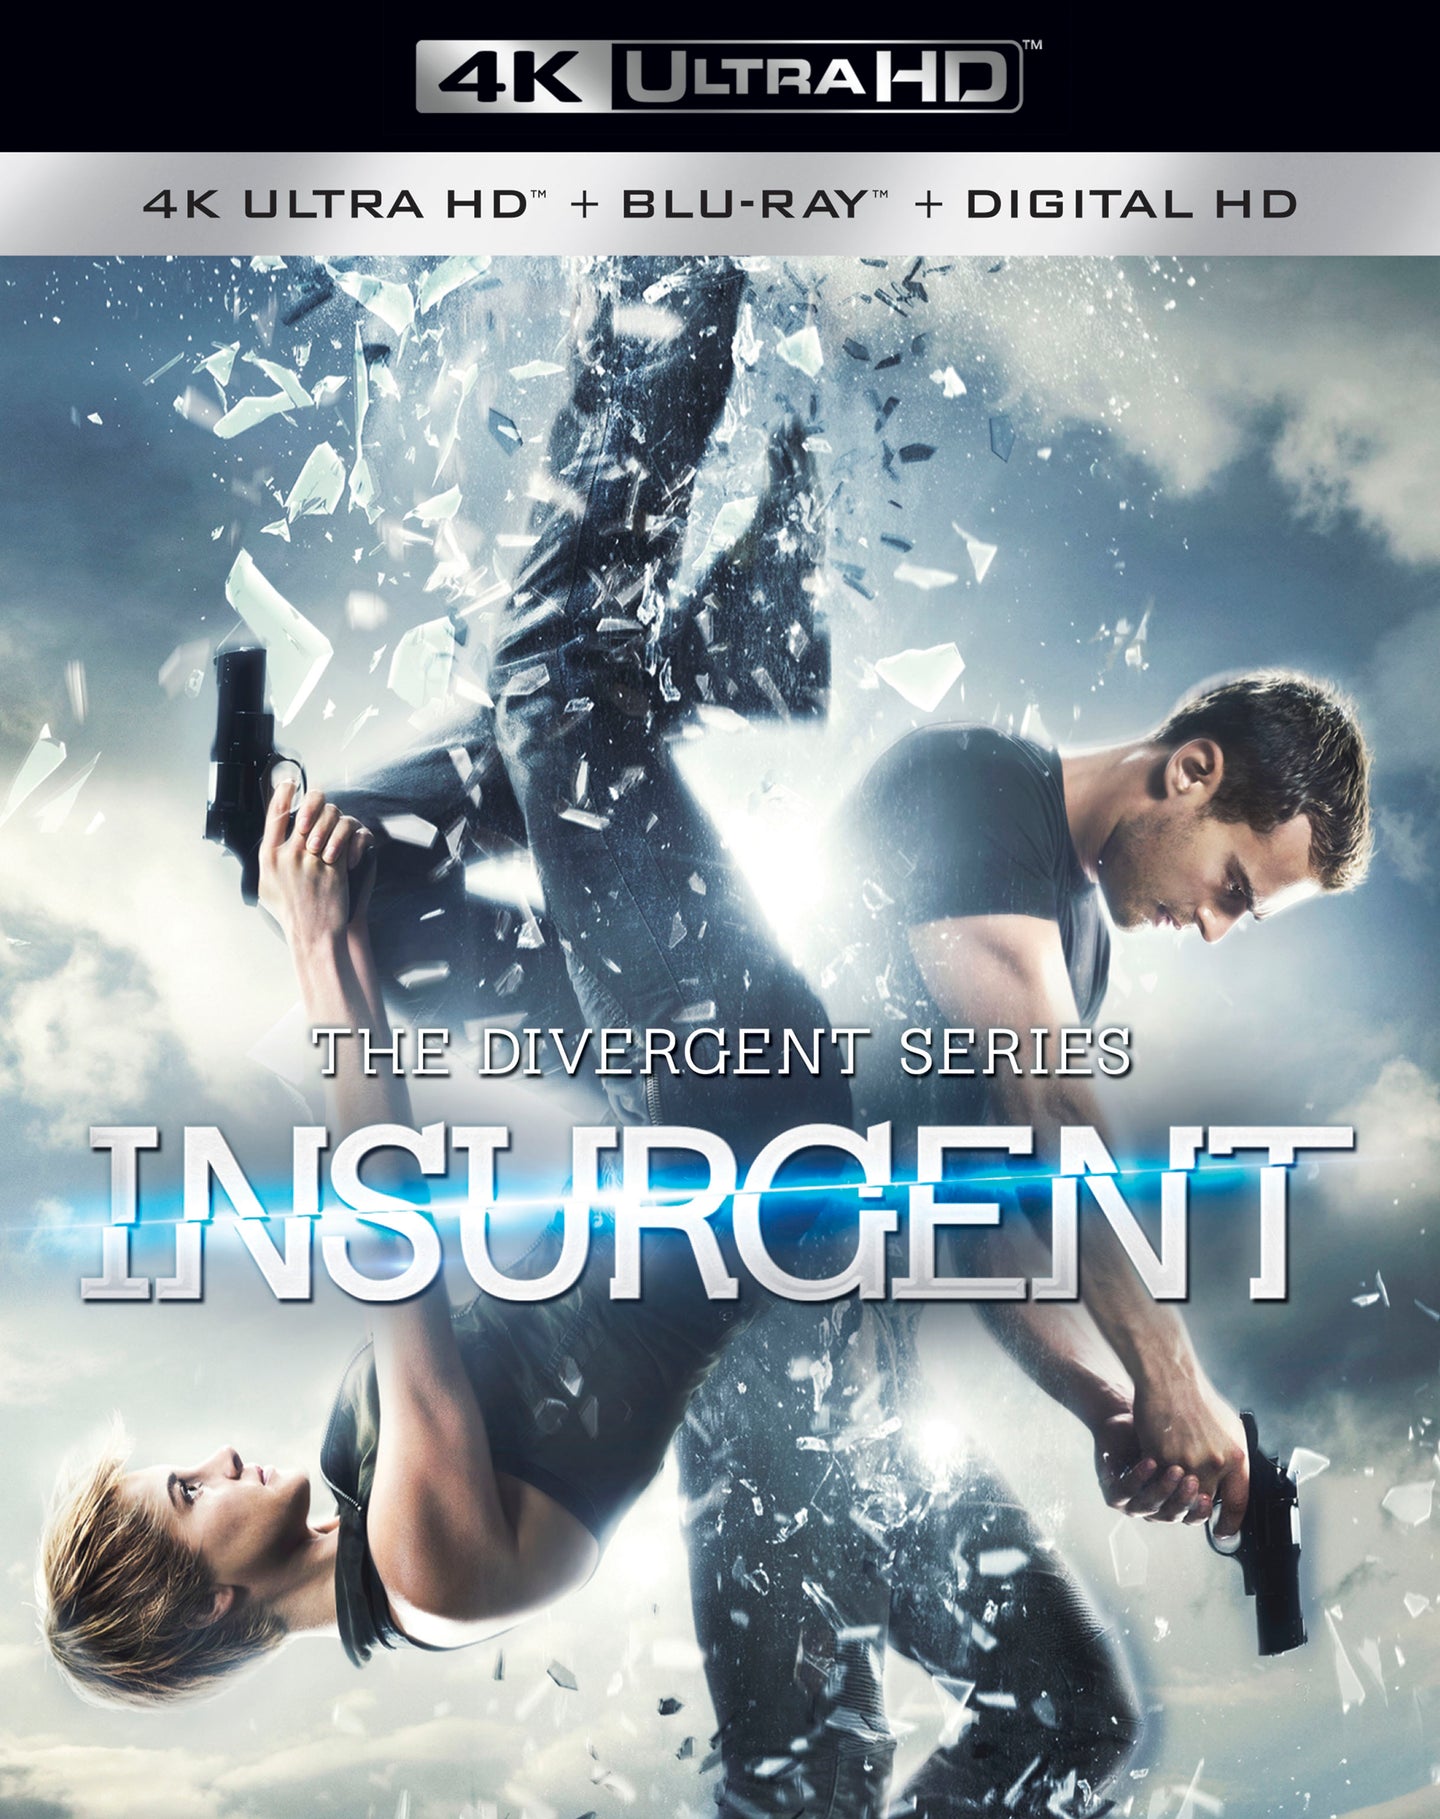 Divergent Series: Insurgent (2015) iTunes 4K redemption only